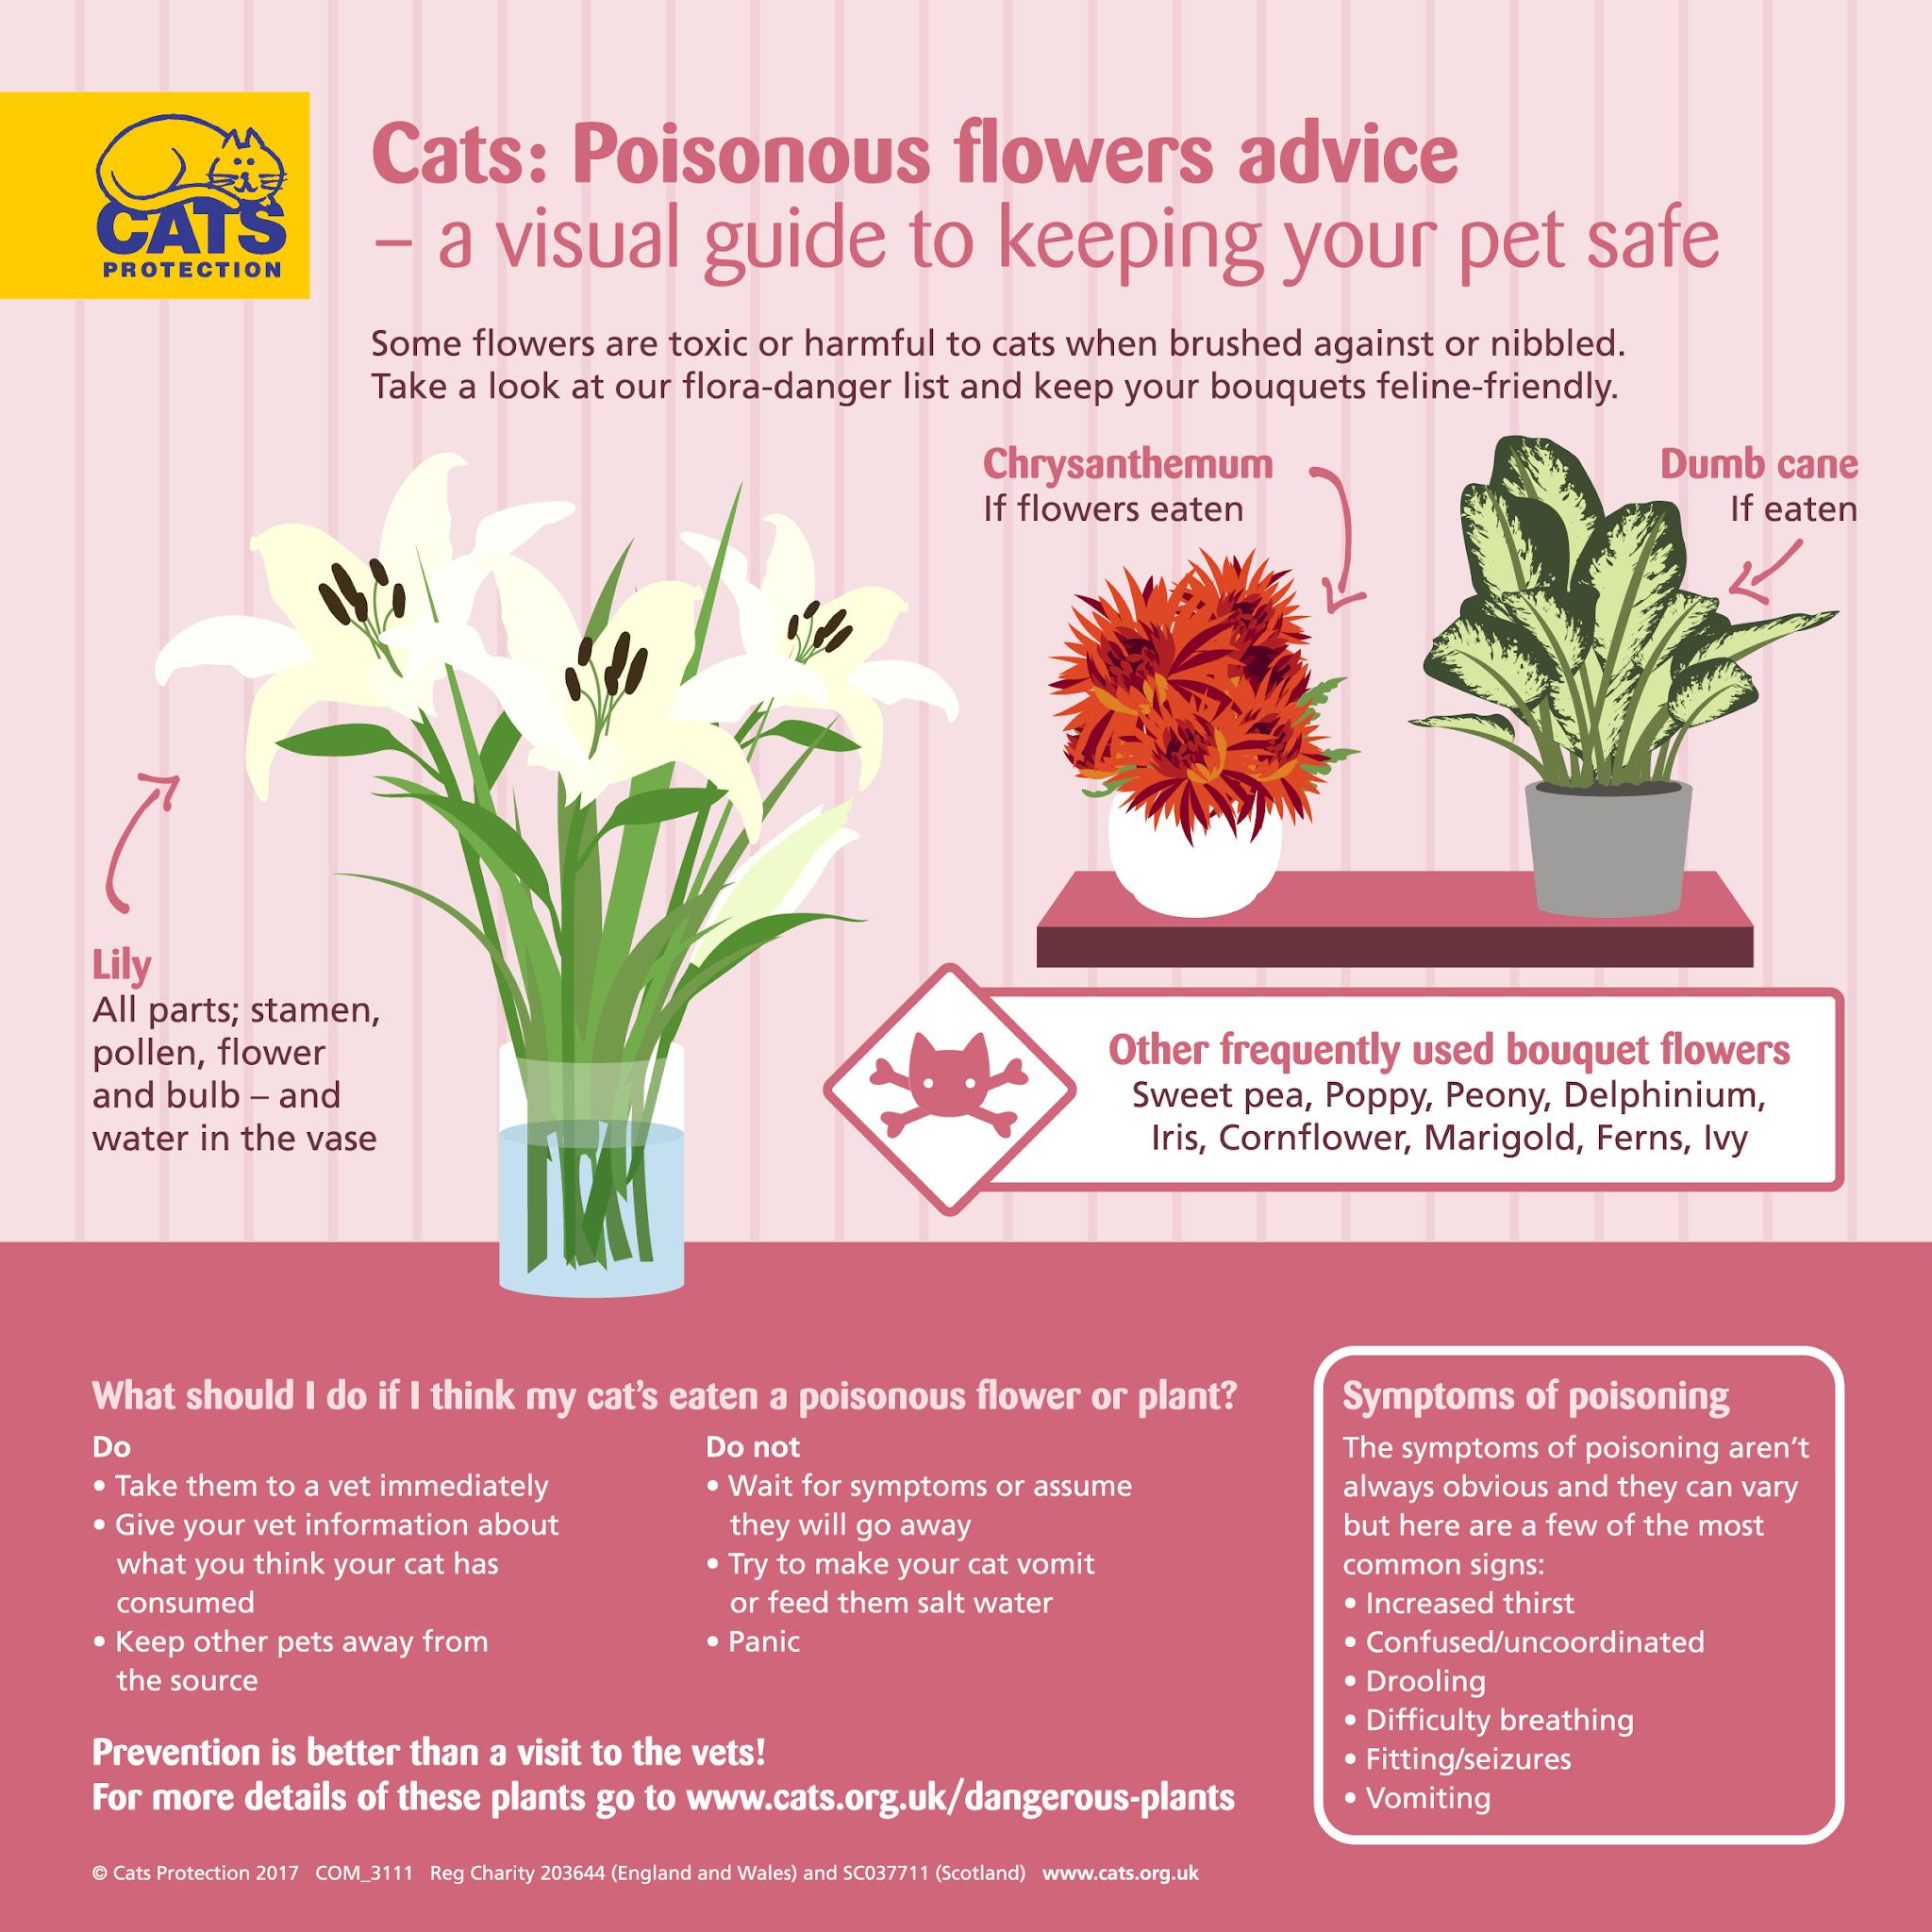 Quelles fleurs sont sans danger pour les chats pour la fête des mères ?